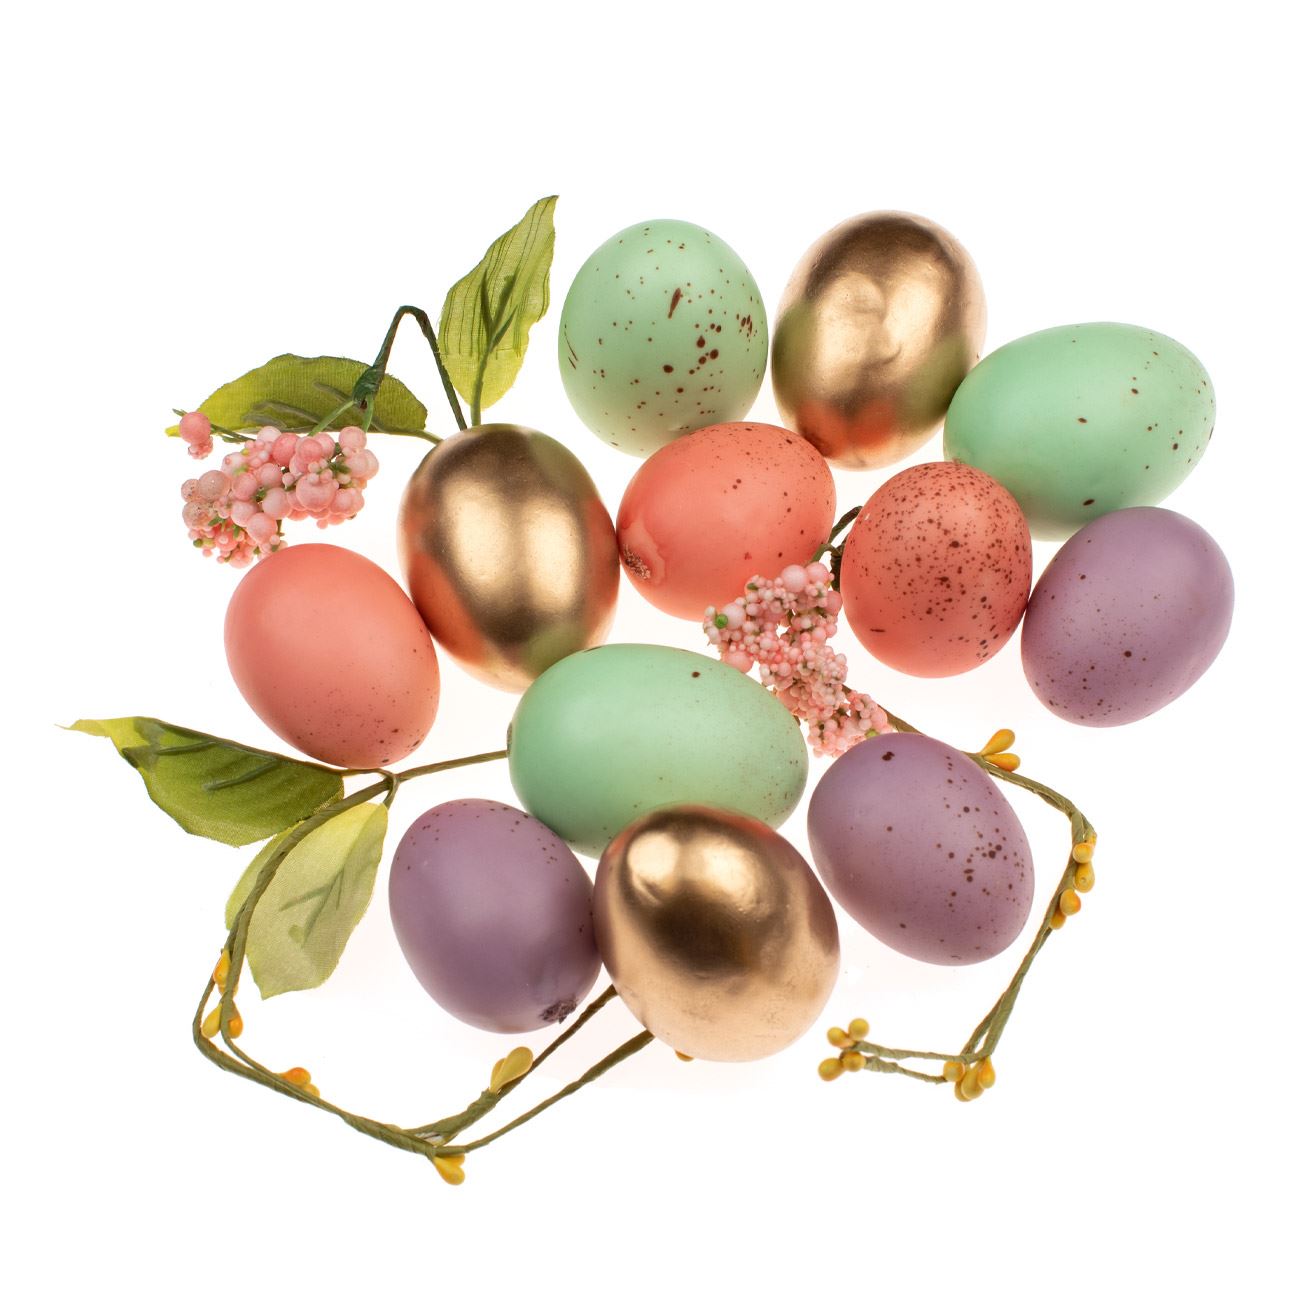 Halvány színű húsvéti dekorációs tojás 12 db